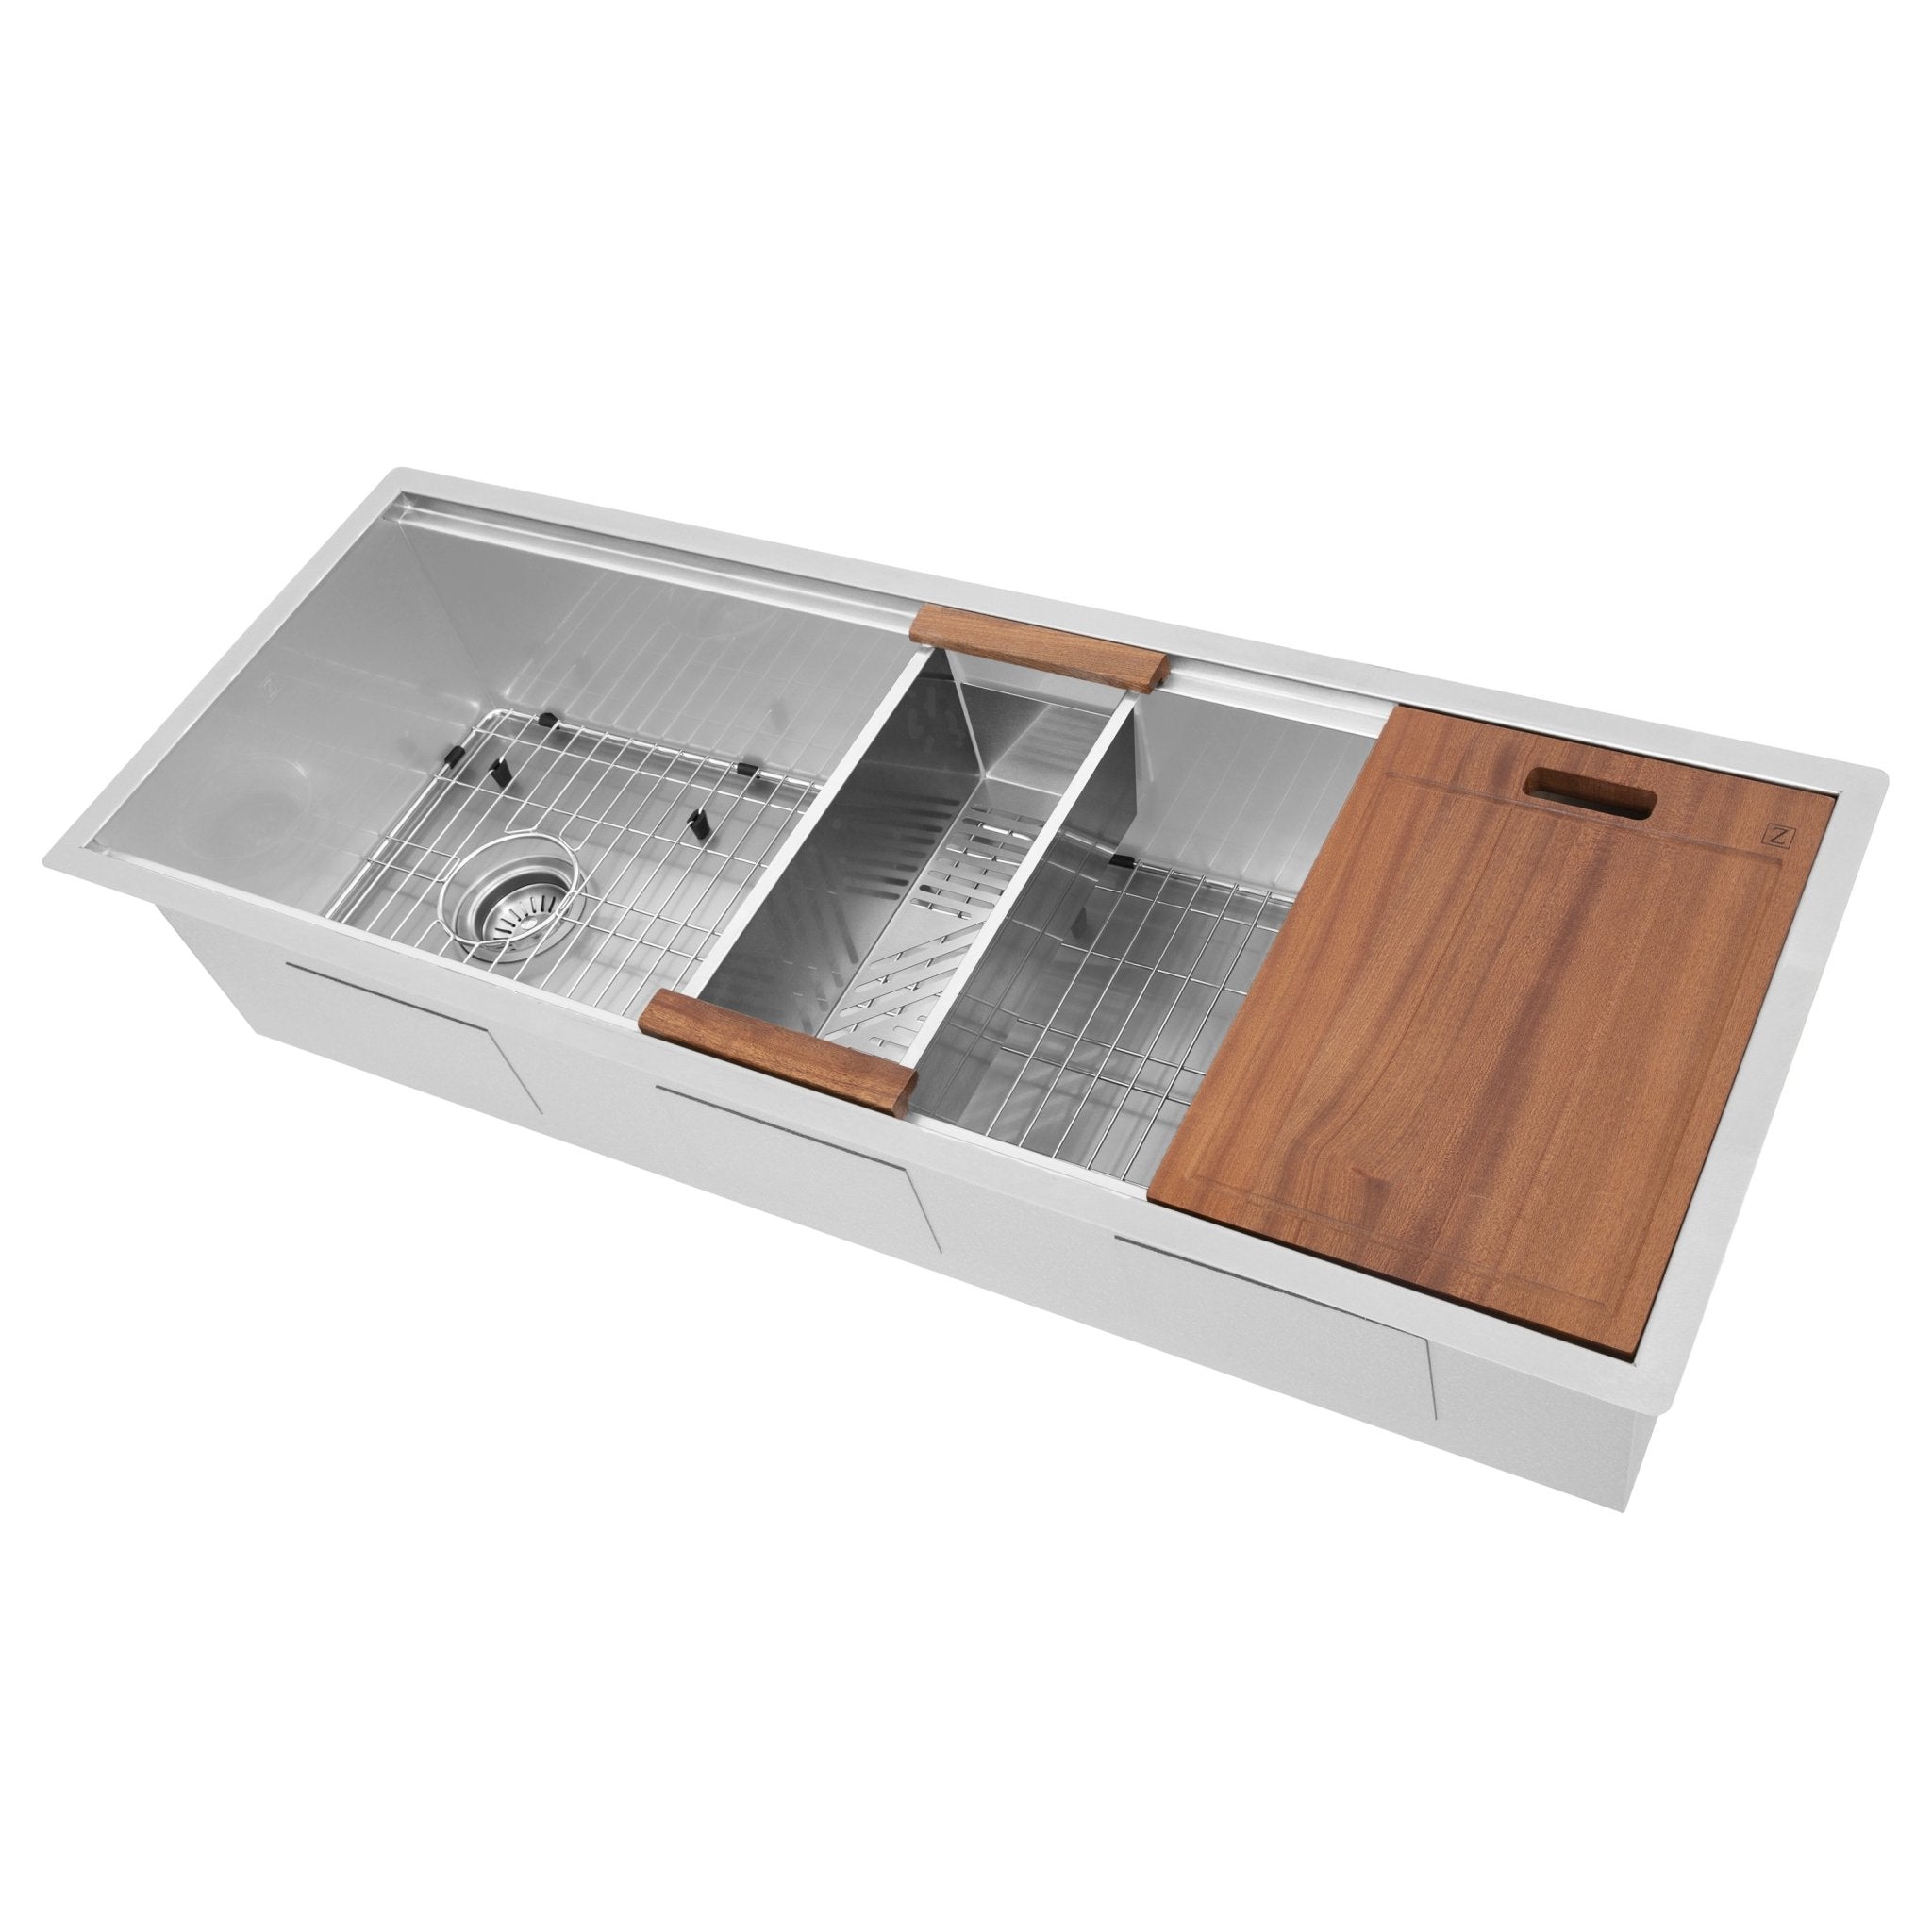 ZLINE 45" Garmisch Undermount Single Bowl Stainless Steel Kitchen Sink with Bottom Grid and Accessories (SLS-45)